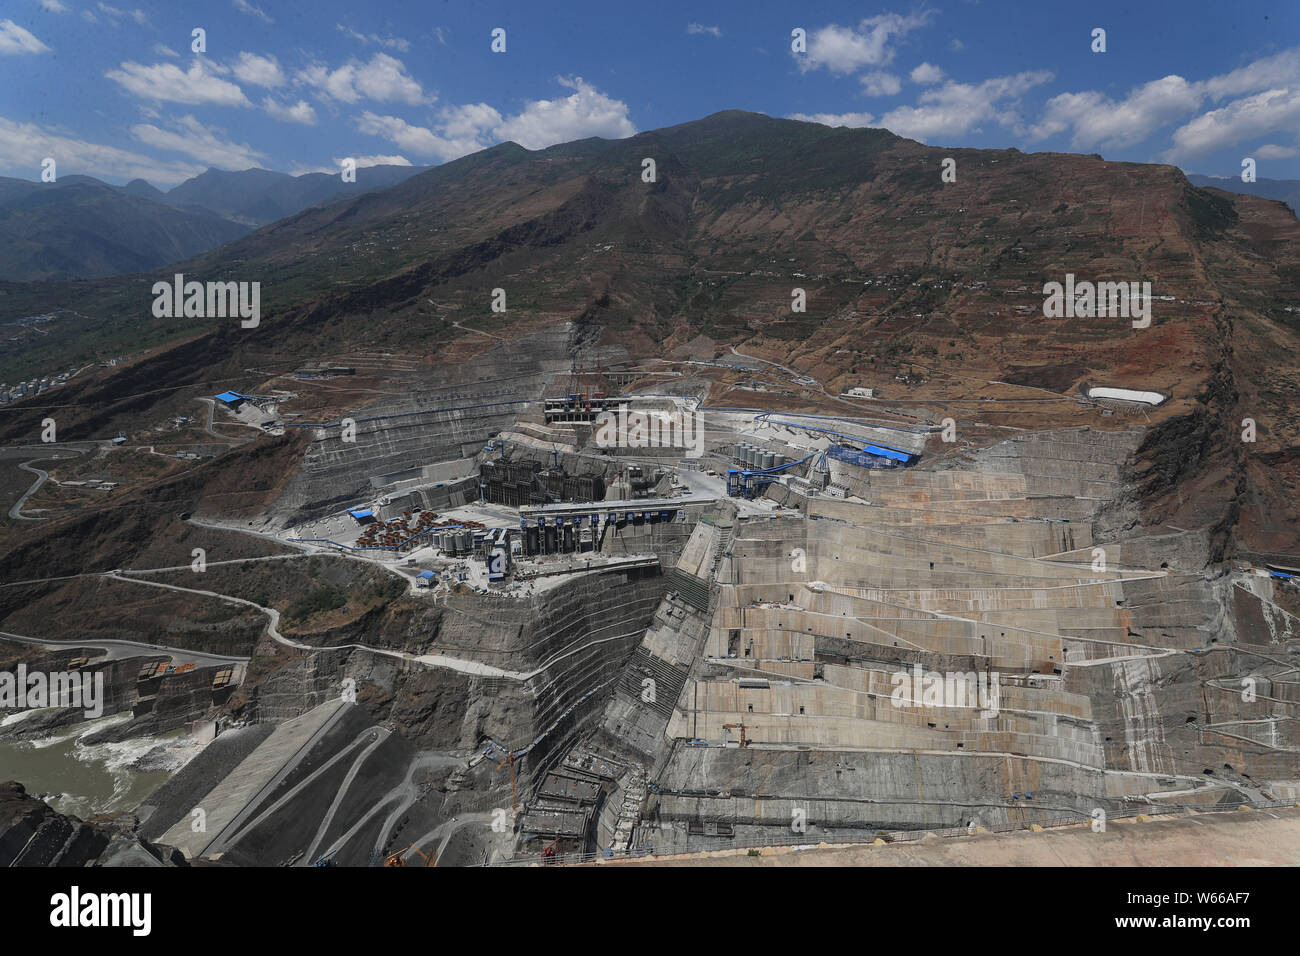 --FILE--Dans cette vue aérienne, la station hydroélectrique Baihetan, le deuxième plus grand projet hydroélectrique, est en construction dans la ville de Dazhai, Qia Banque D'Images